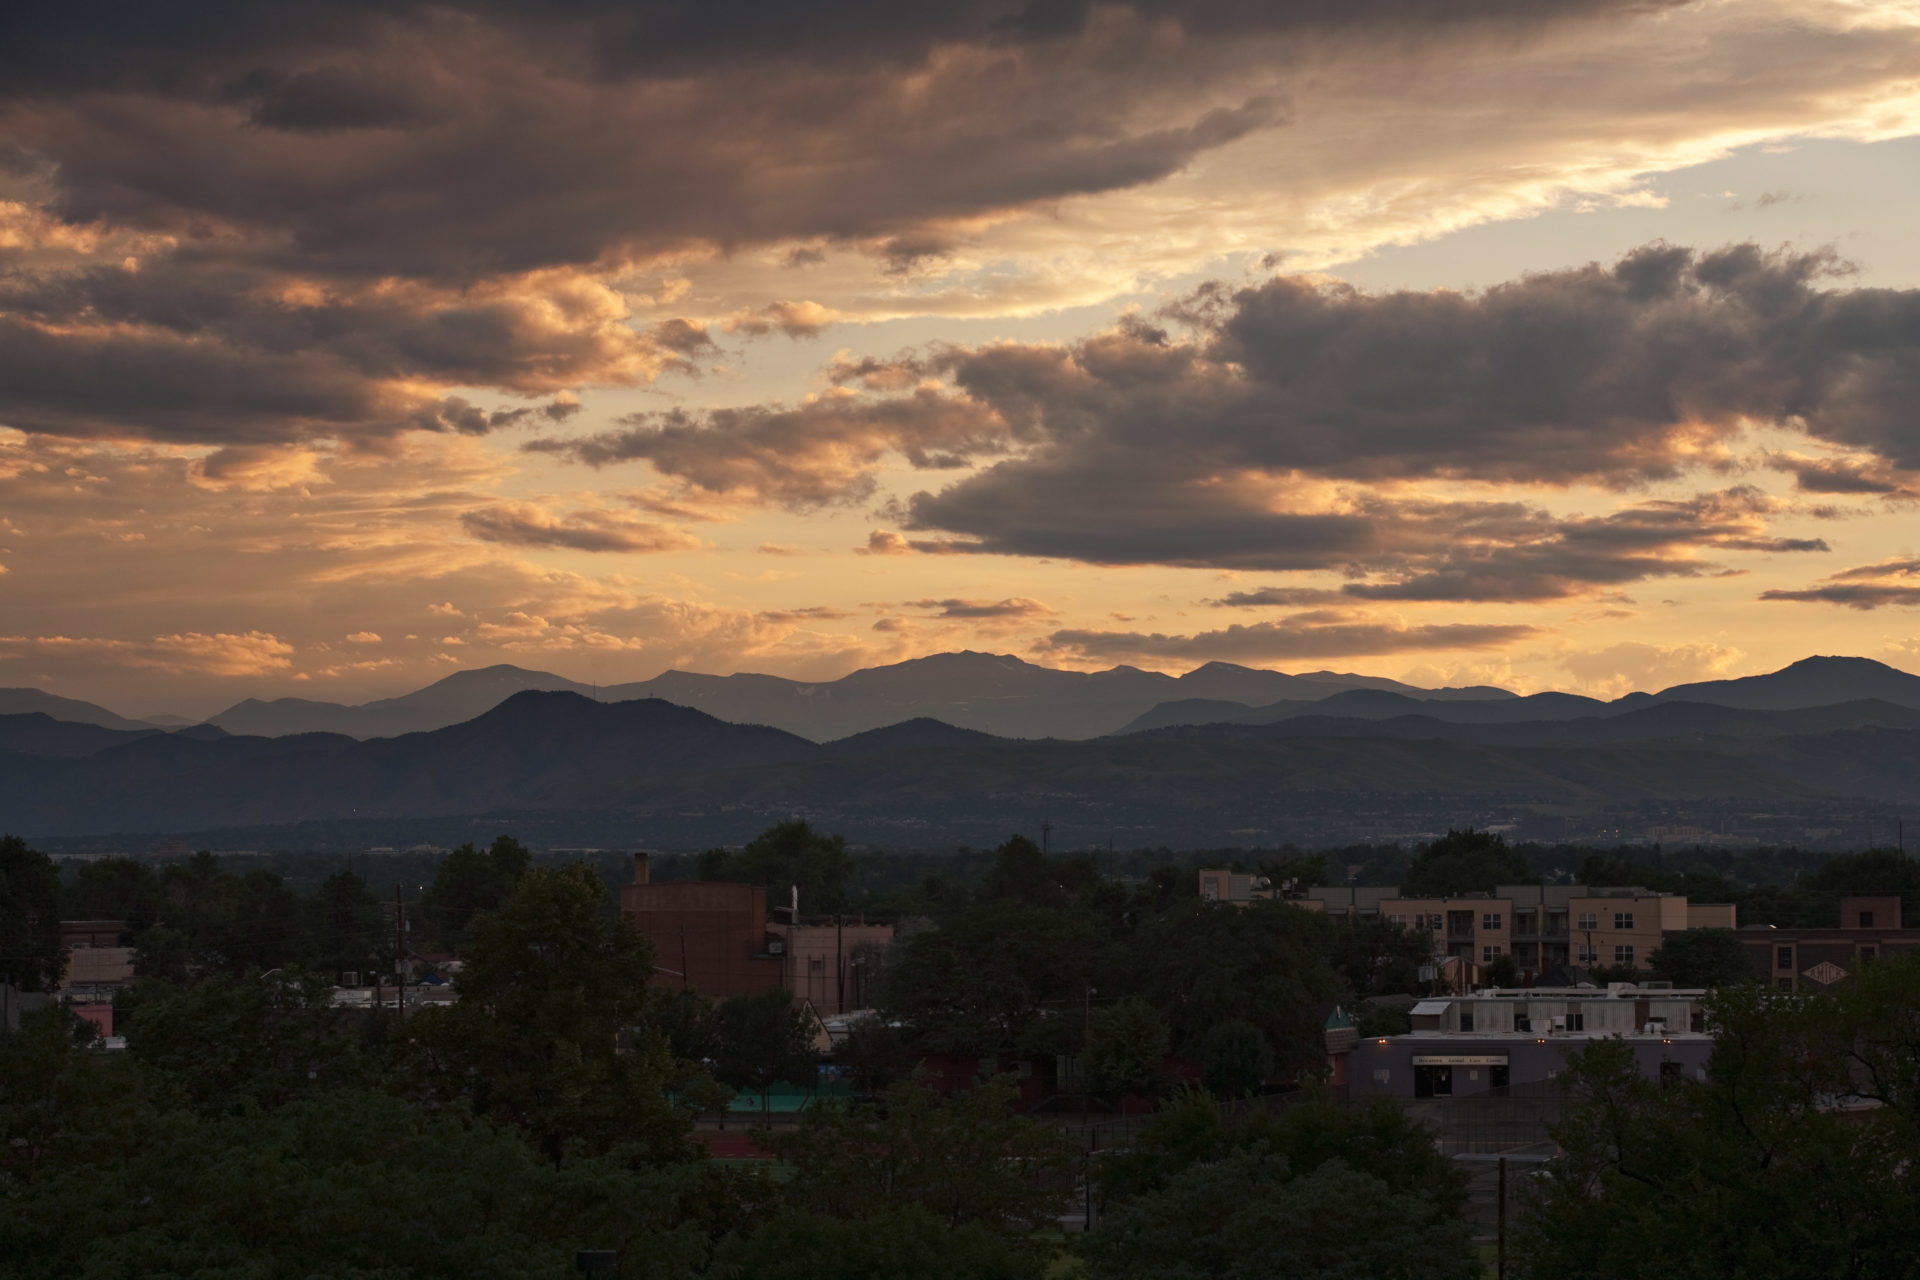 Mount Evans sunset - July 28, 2011